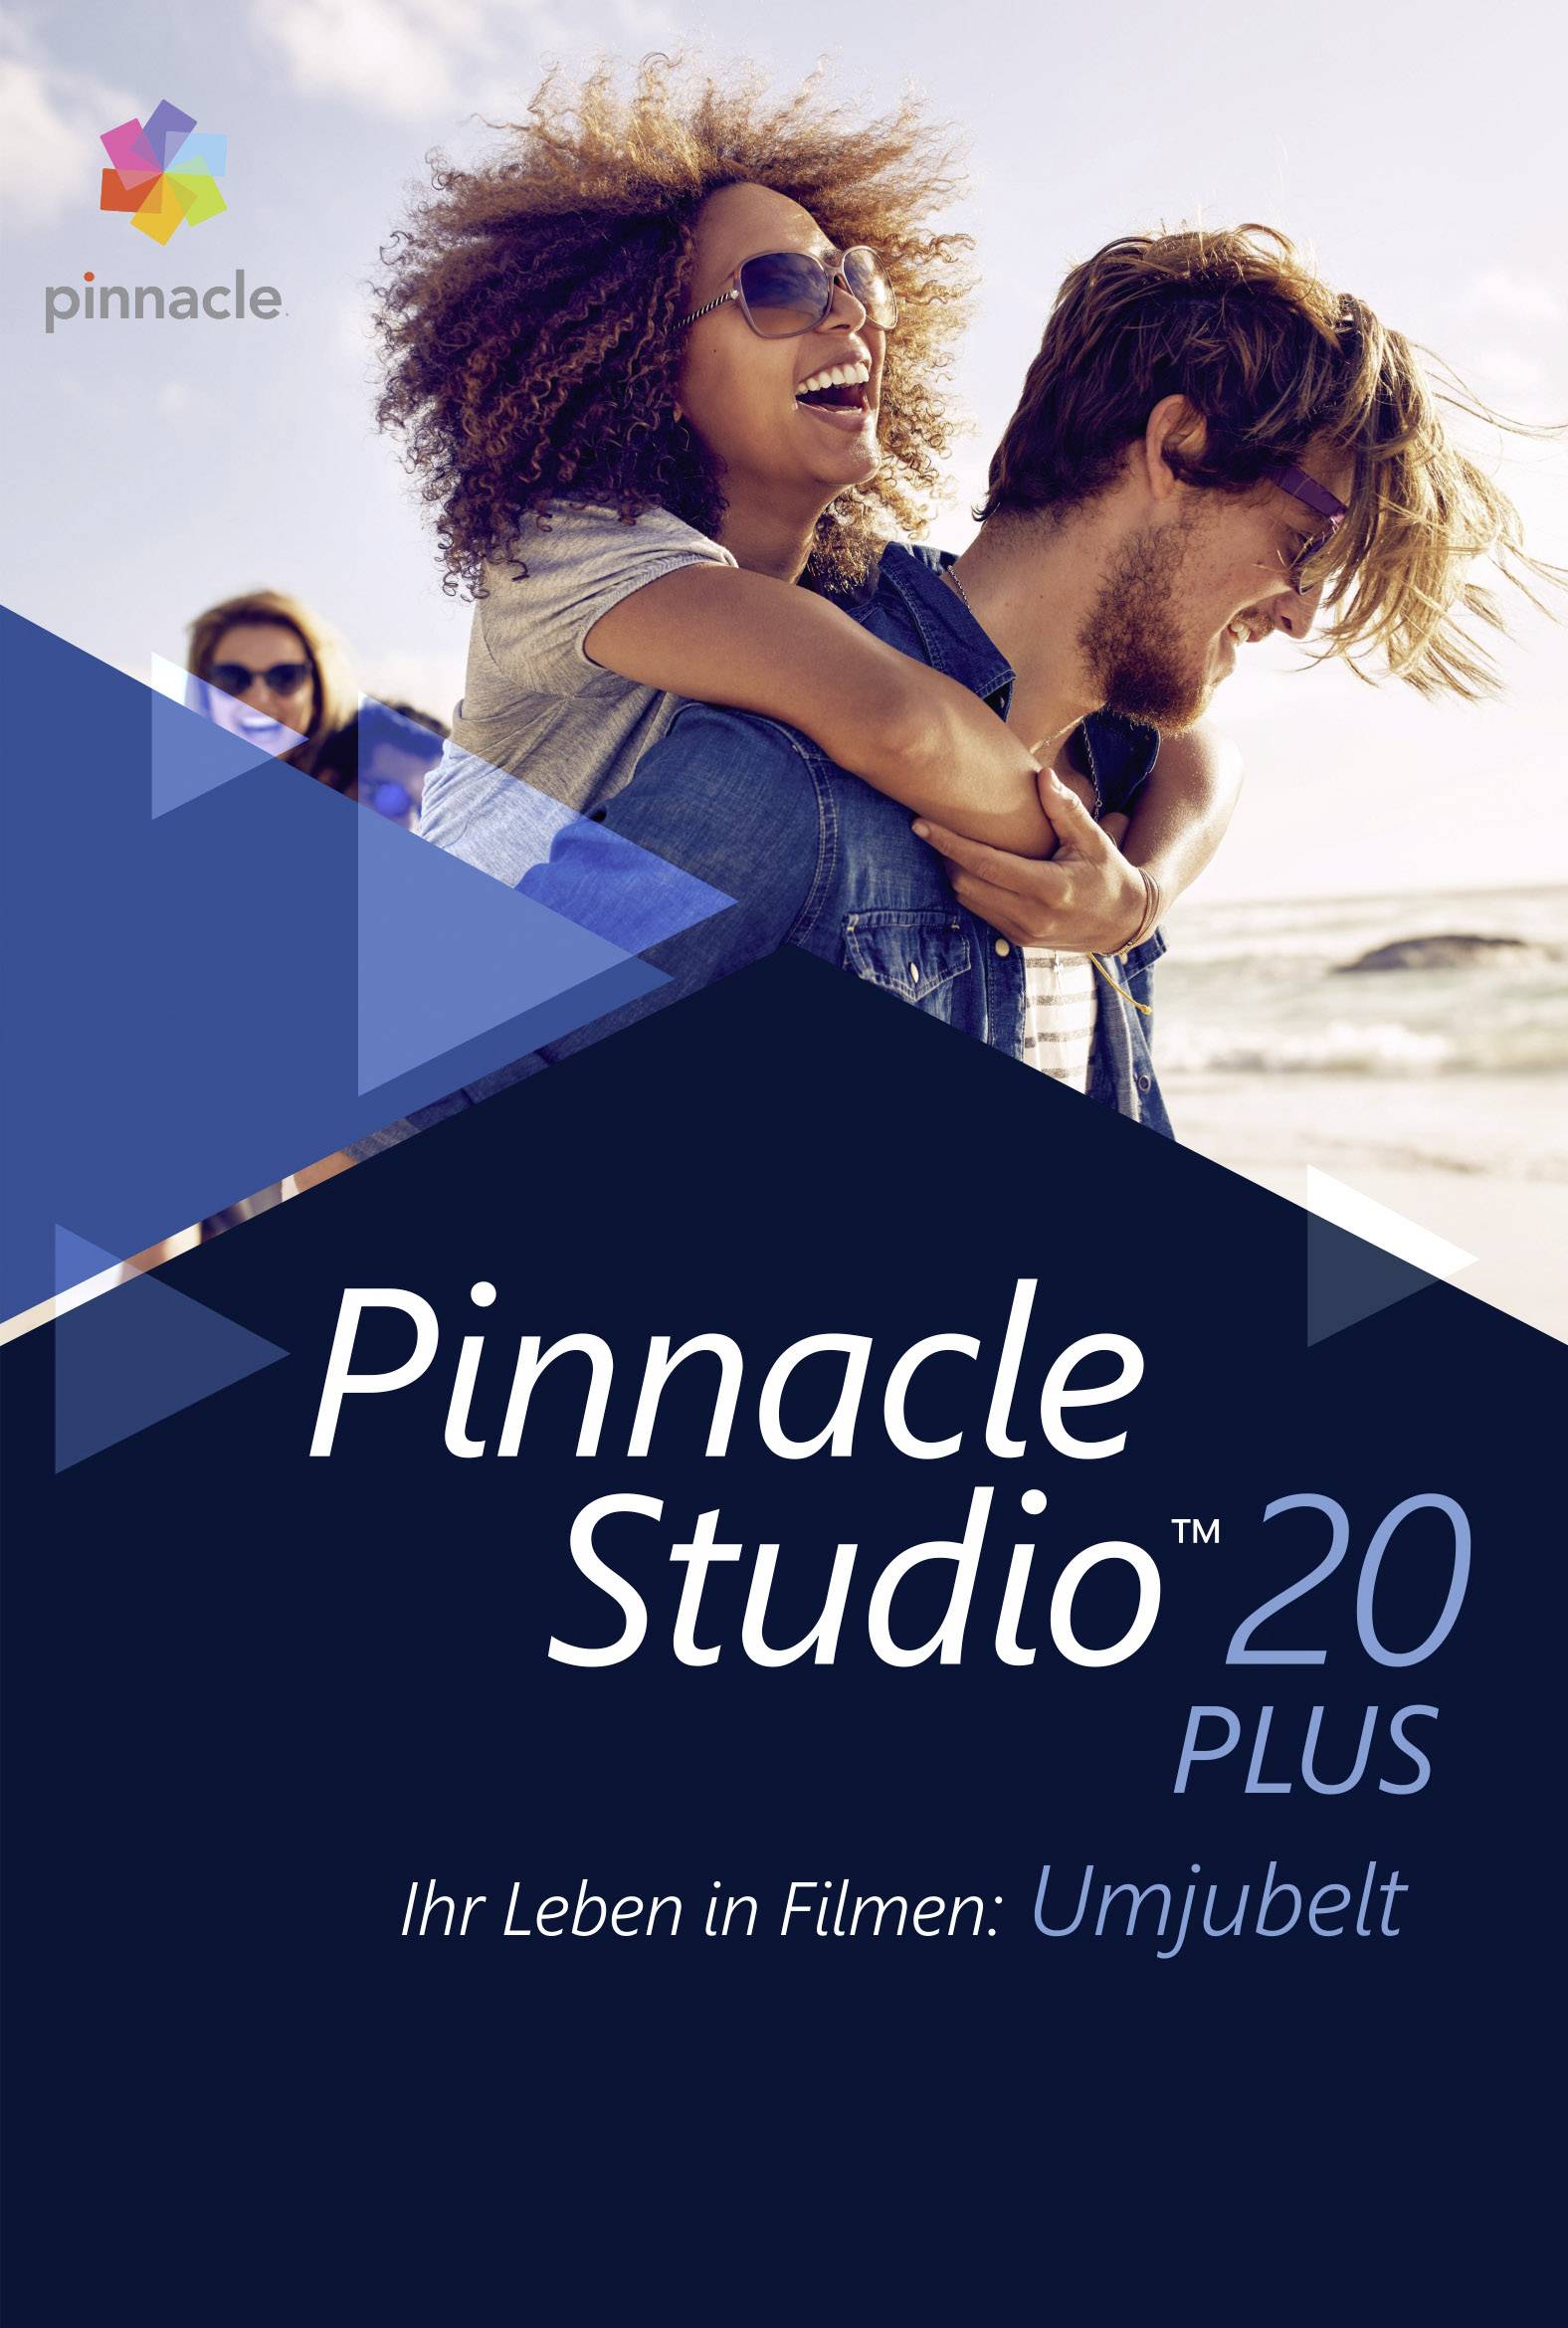 pinnacle studio 20 ultimate free download full version